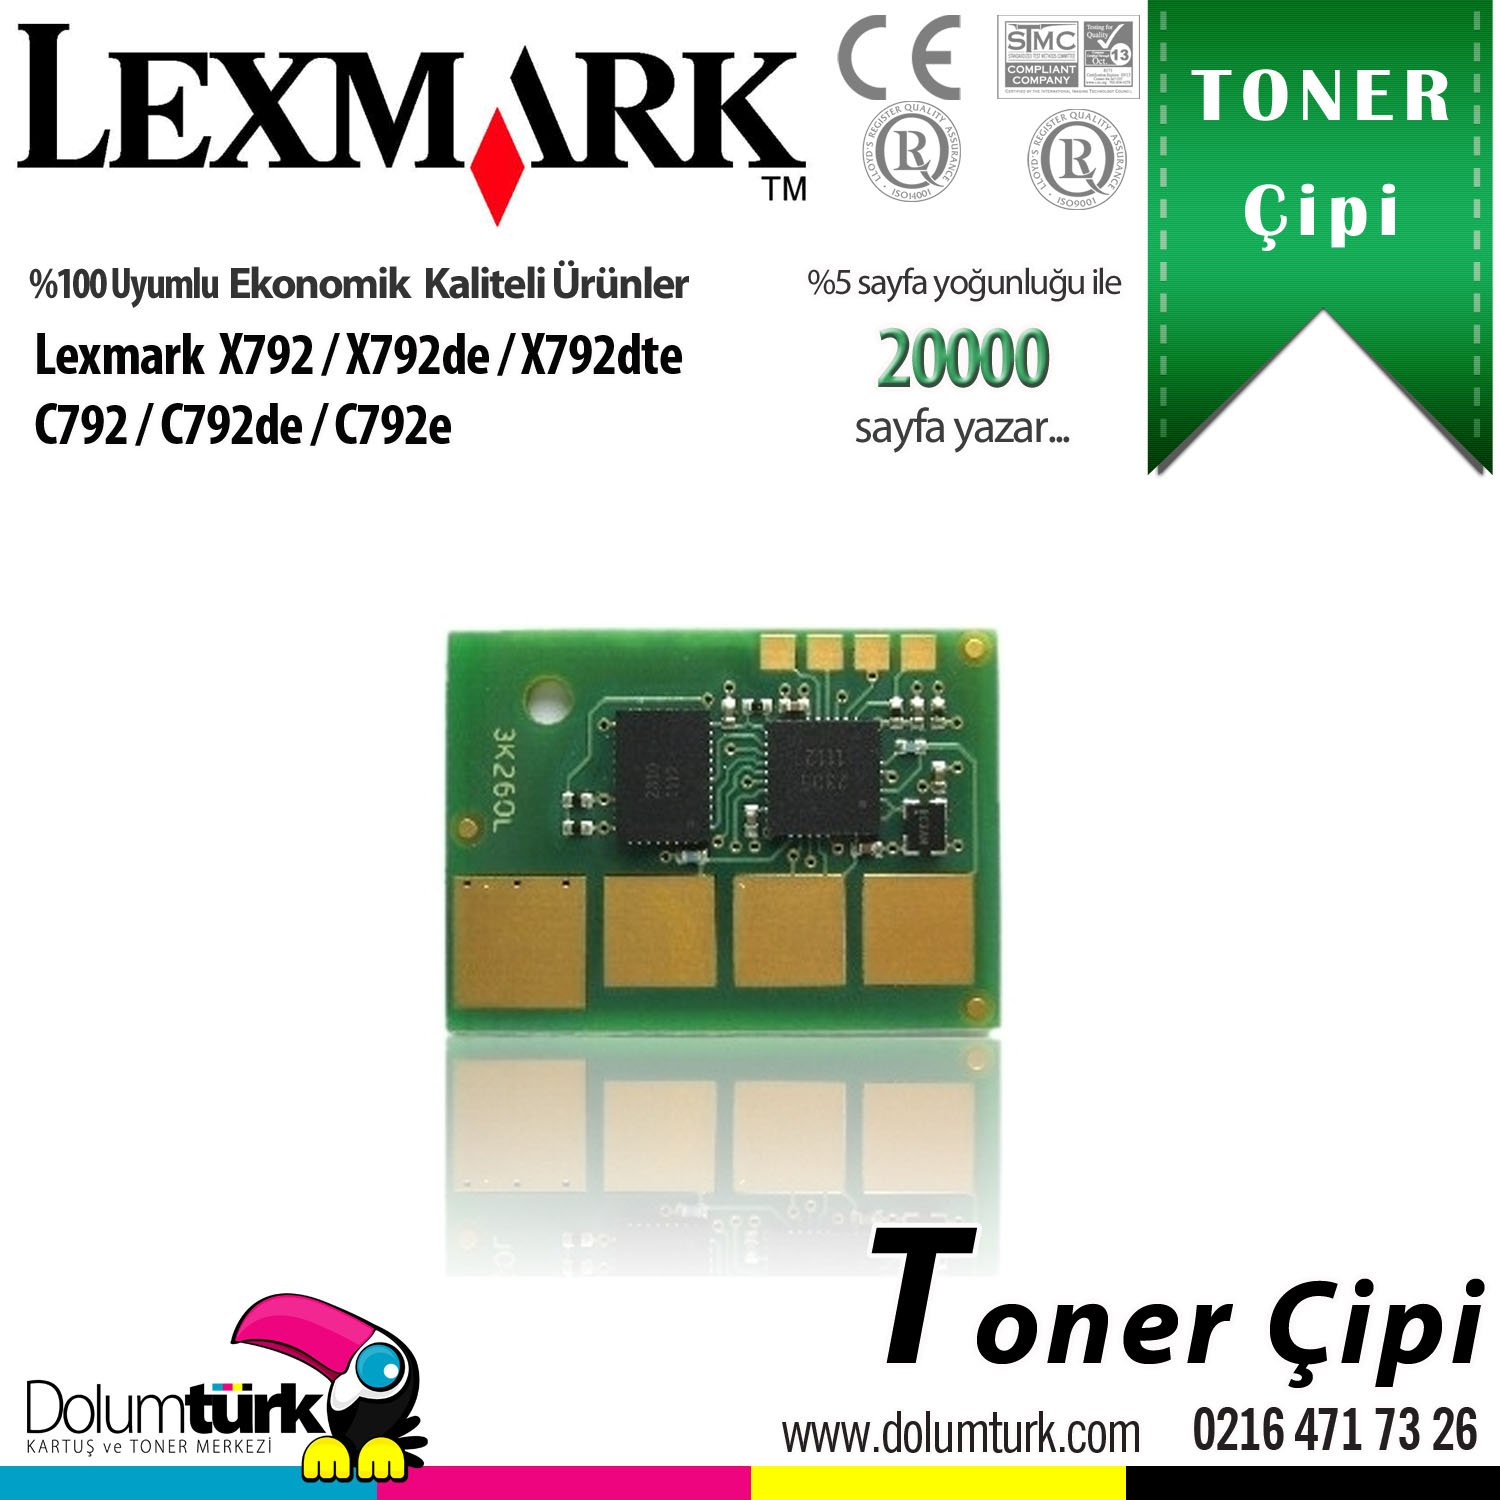 Lexmark X792 / X792de / X792dte / C792 / C792de / C792e Toner Çipi 20KG